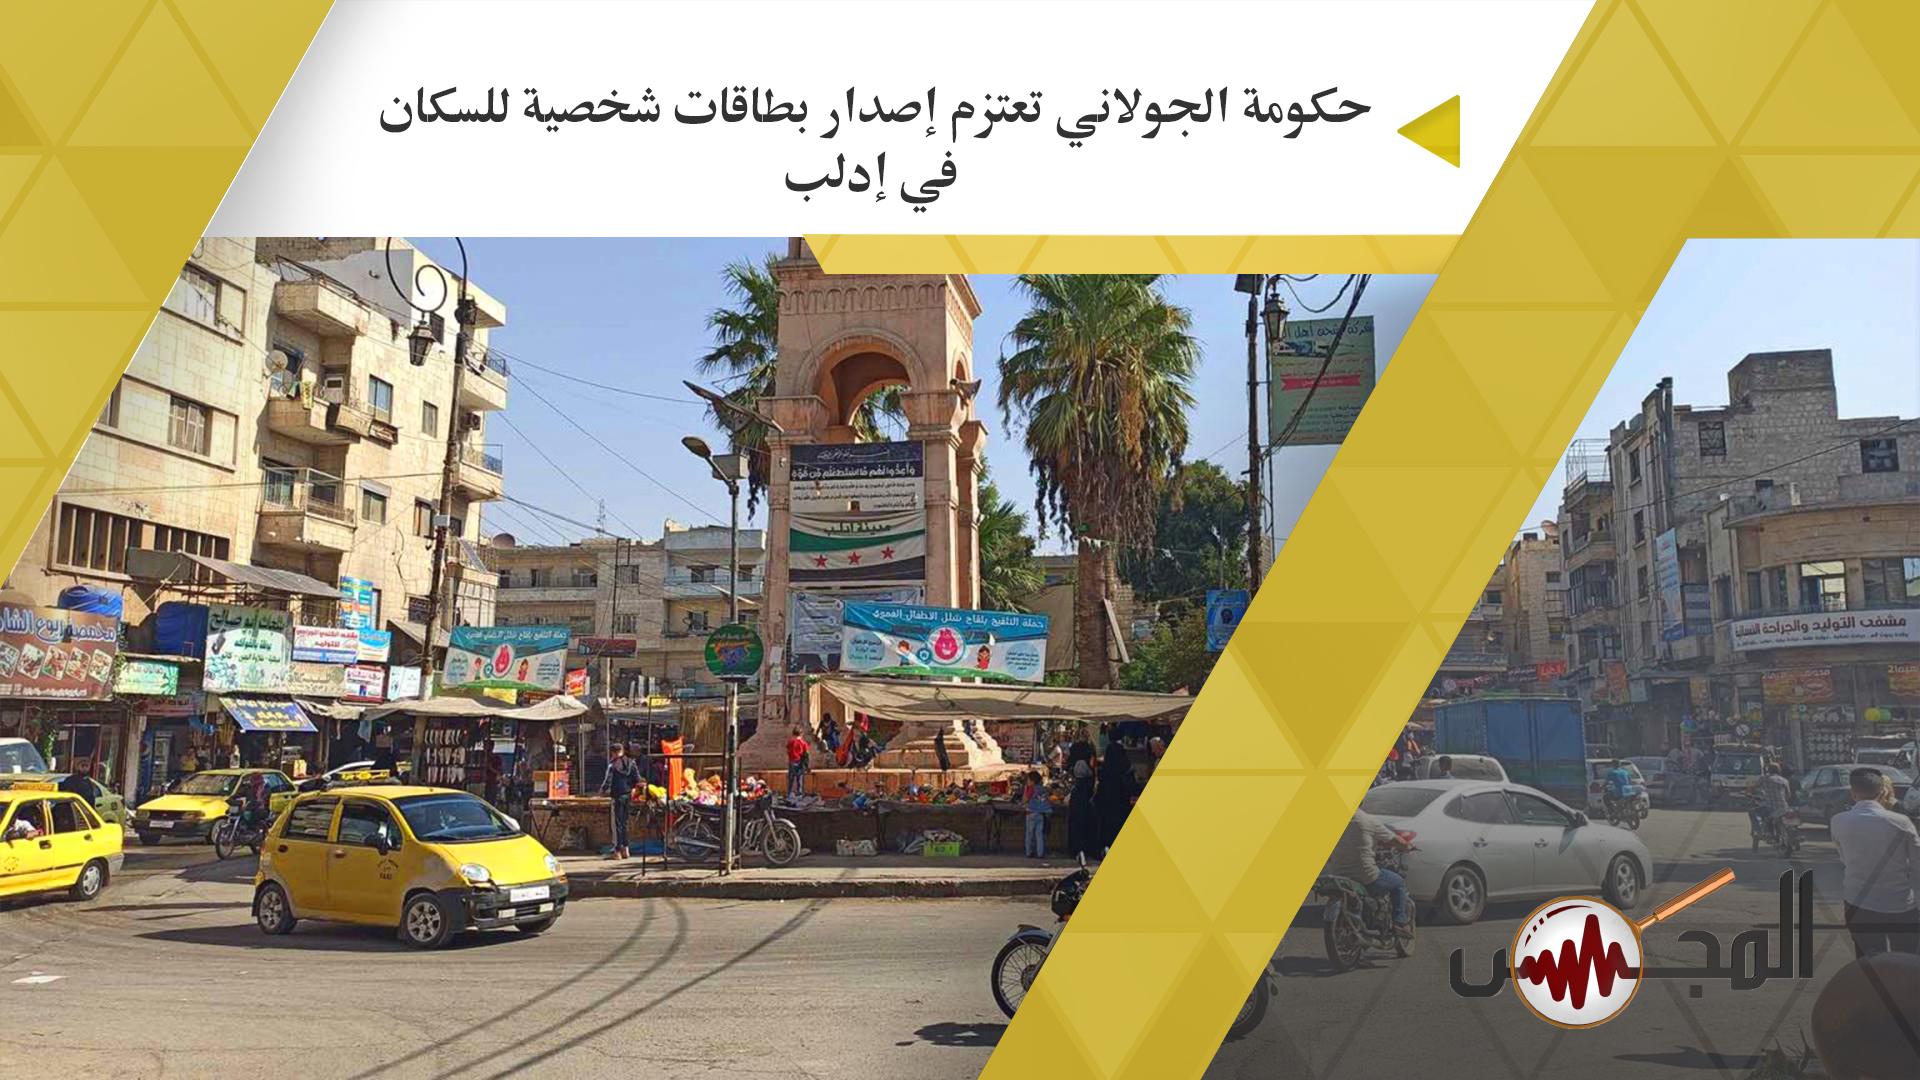 حكومة الجولاني تعتزم إصدار بطاقات شخصية للسكان في إدلب